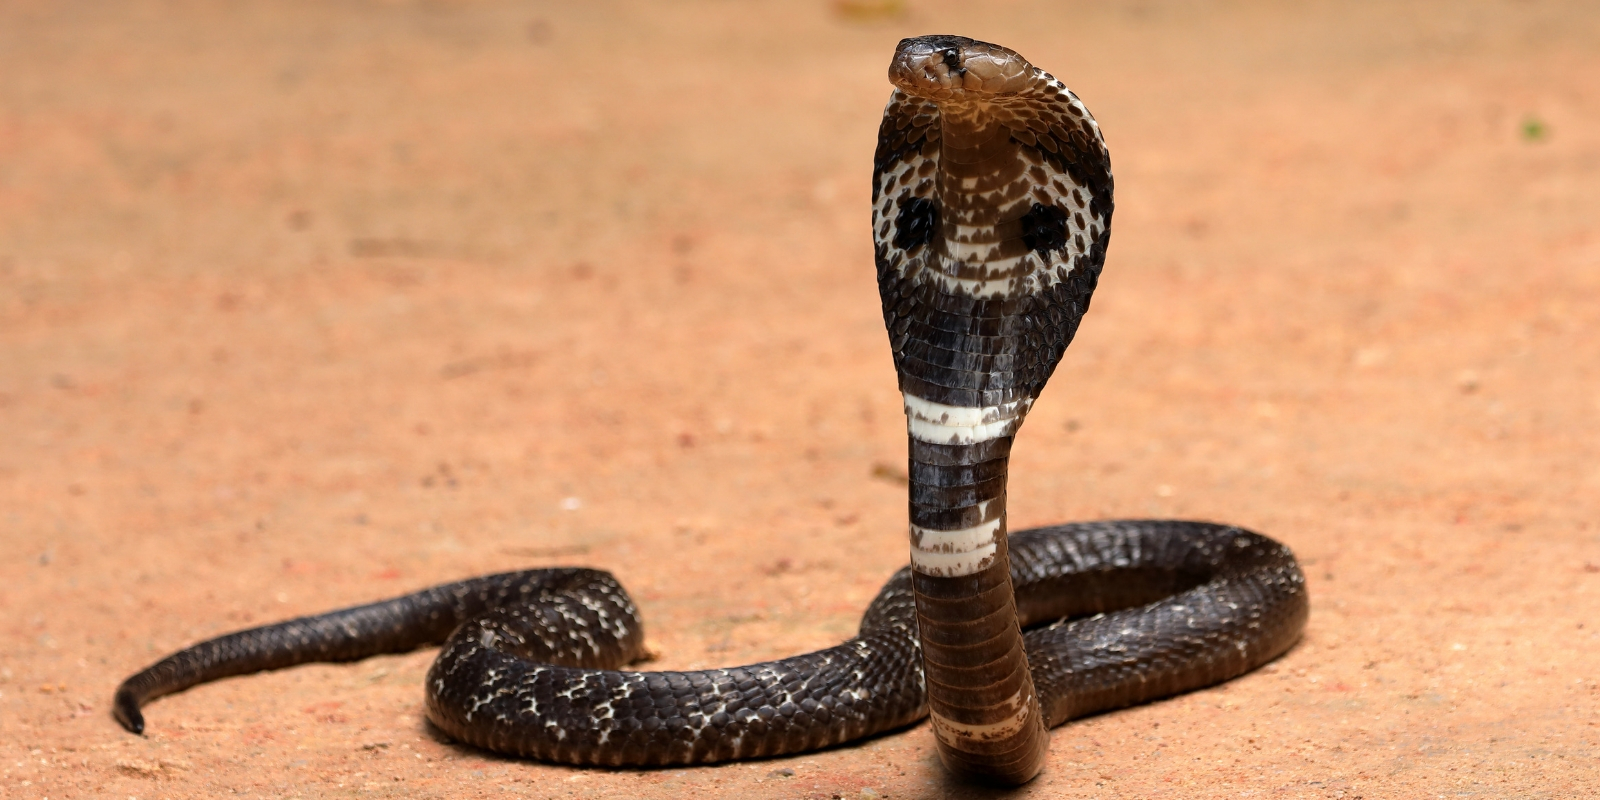 cobra found in Sri Lanka